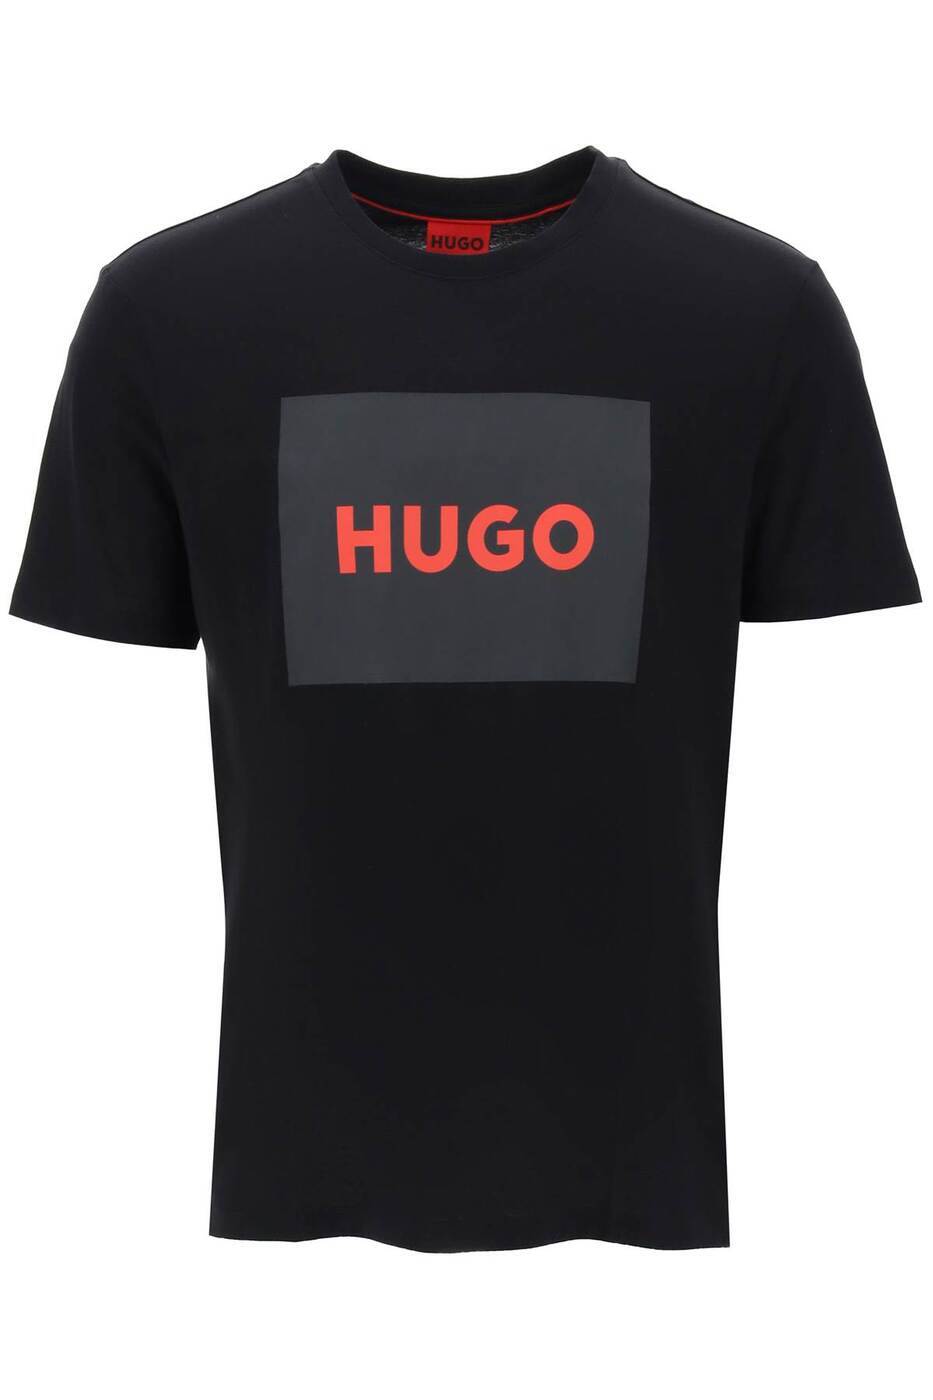 HUGO BOSS ヒューゴボス Tシャツ メン